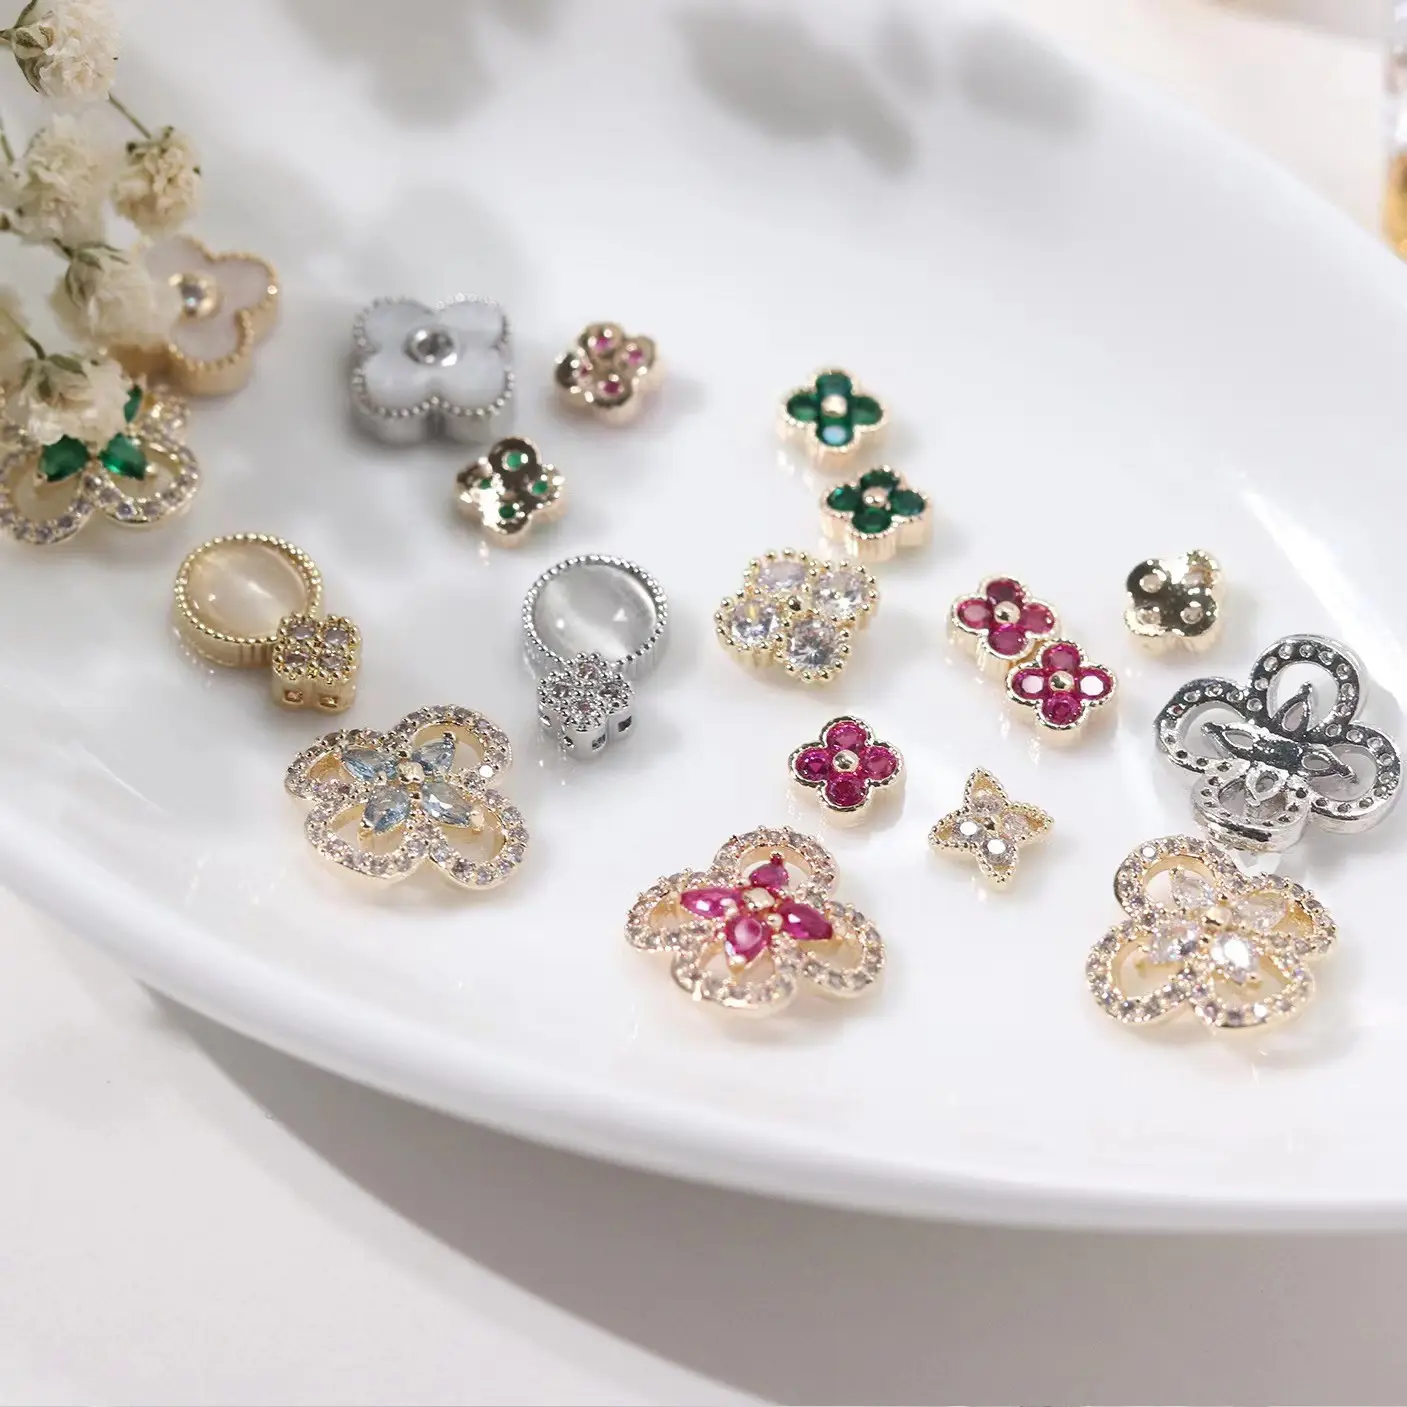 Großhandel neues Design Schöne Blume Nagel Dekoration liefert Bulk Neueste Technologie Nagel Charms für Mädchen